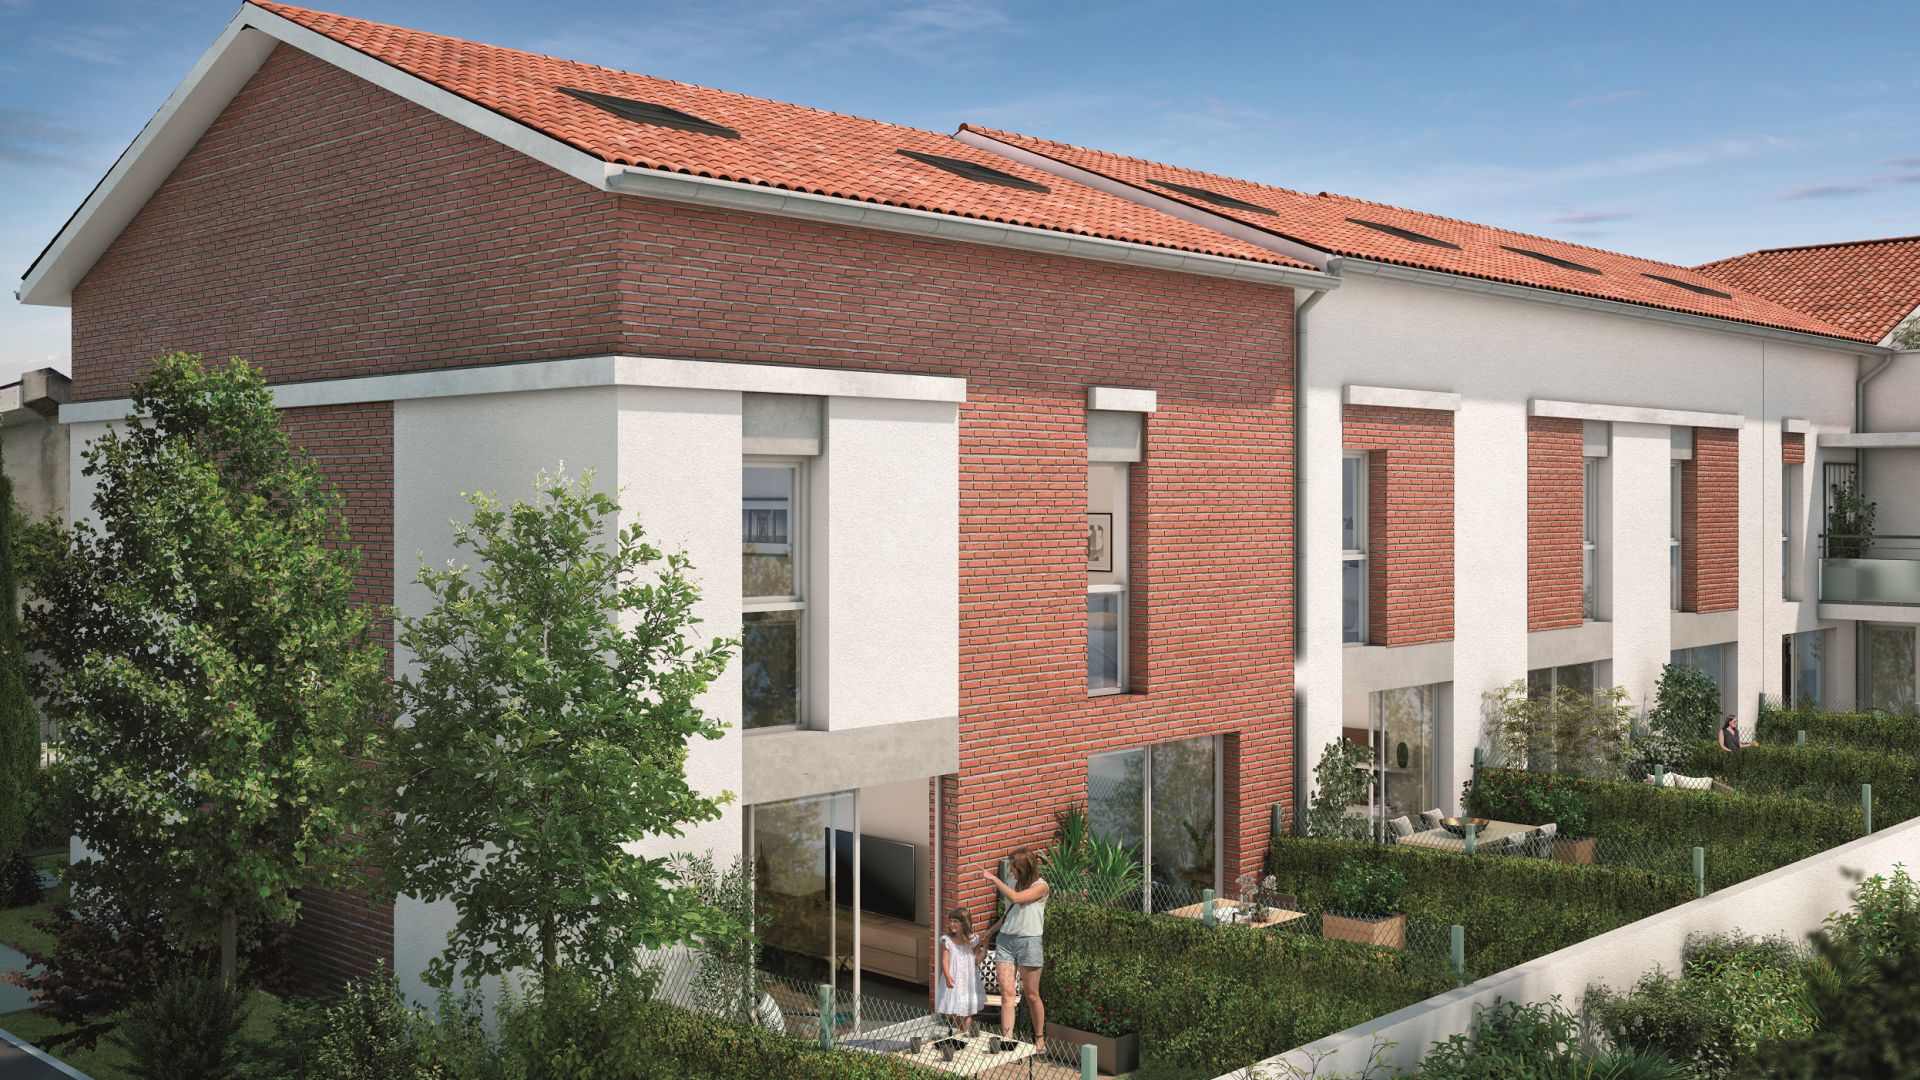 GreenCity immobilier - Toulouse Saint-Simon - 31100 - Résidence Tempo Verde - appartements neufs et villas neuves - villas